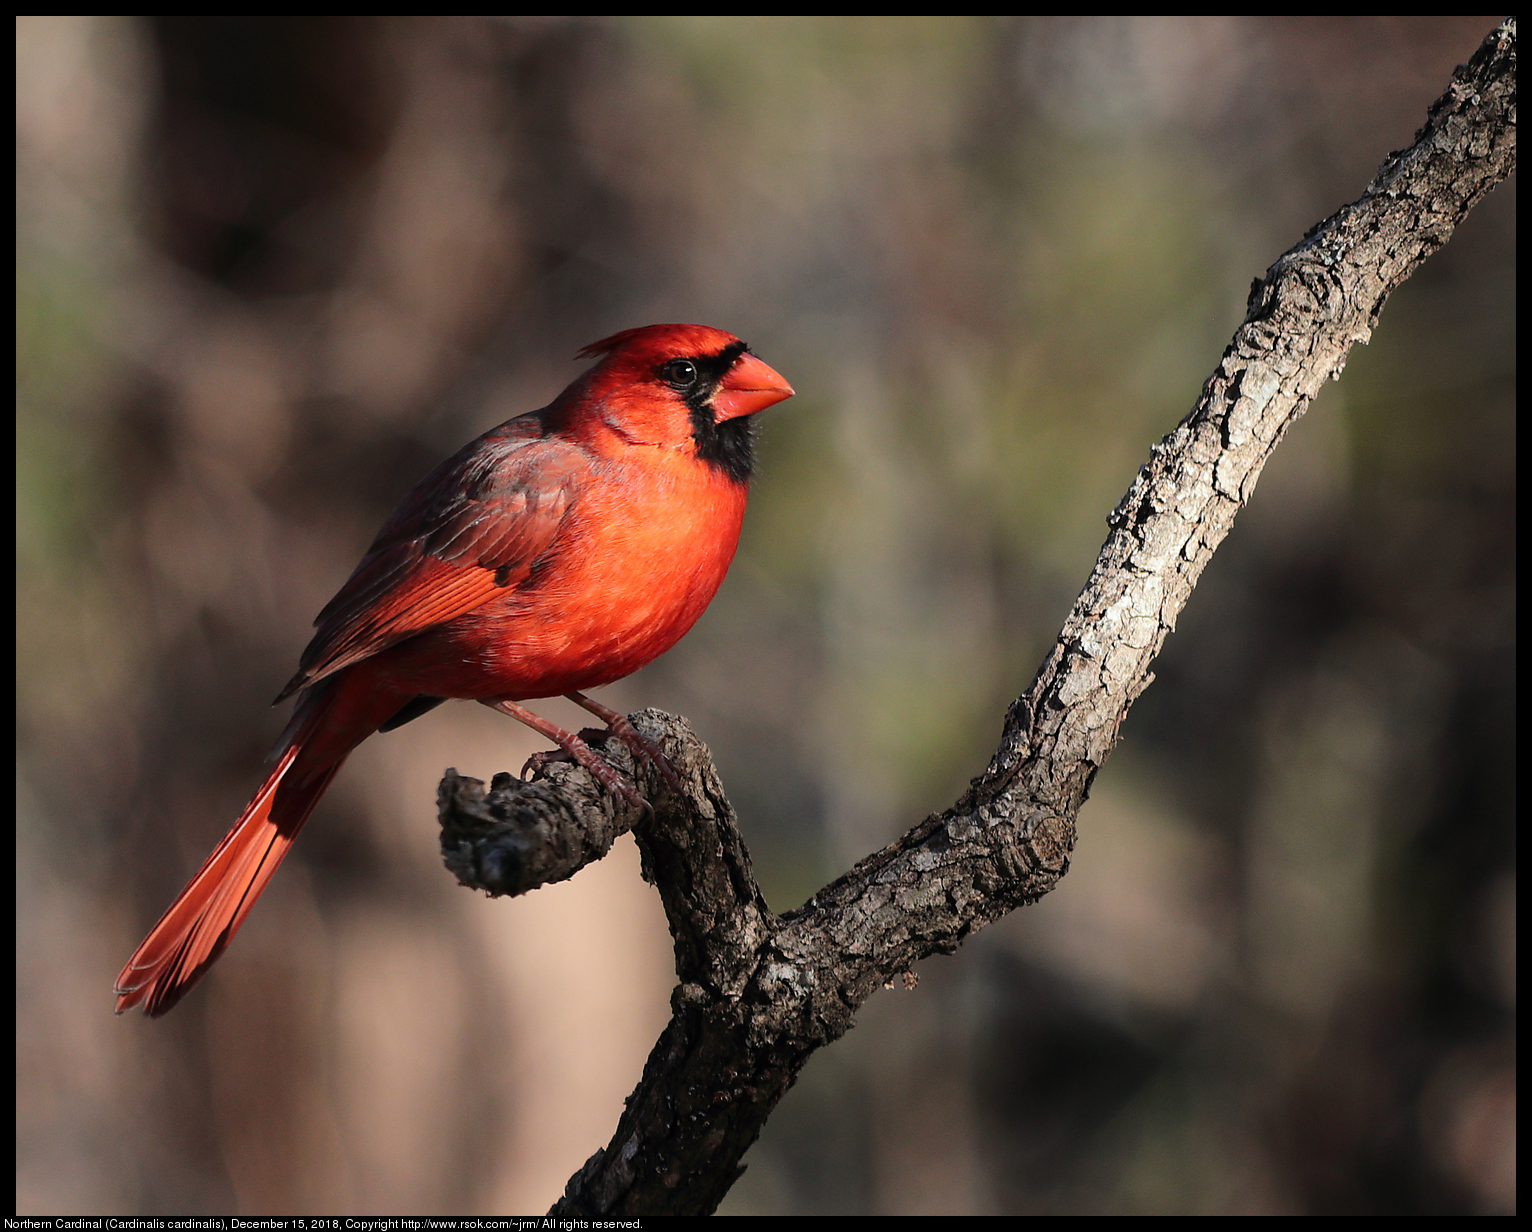 Northern Cardinal (Cardinalis cardinalis), December 15, 2018